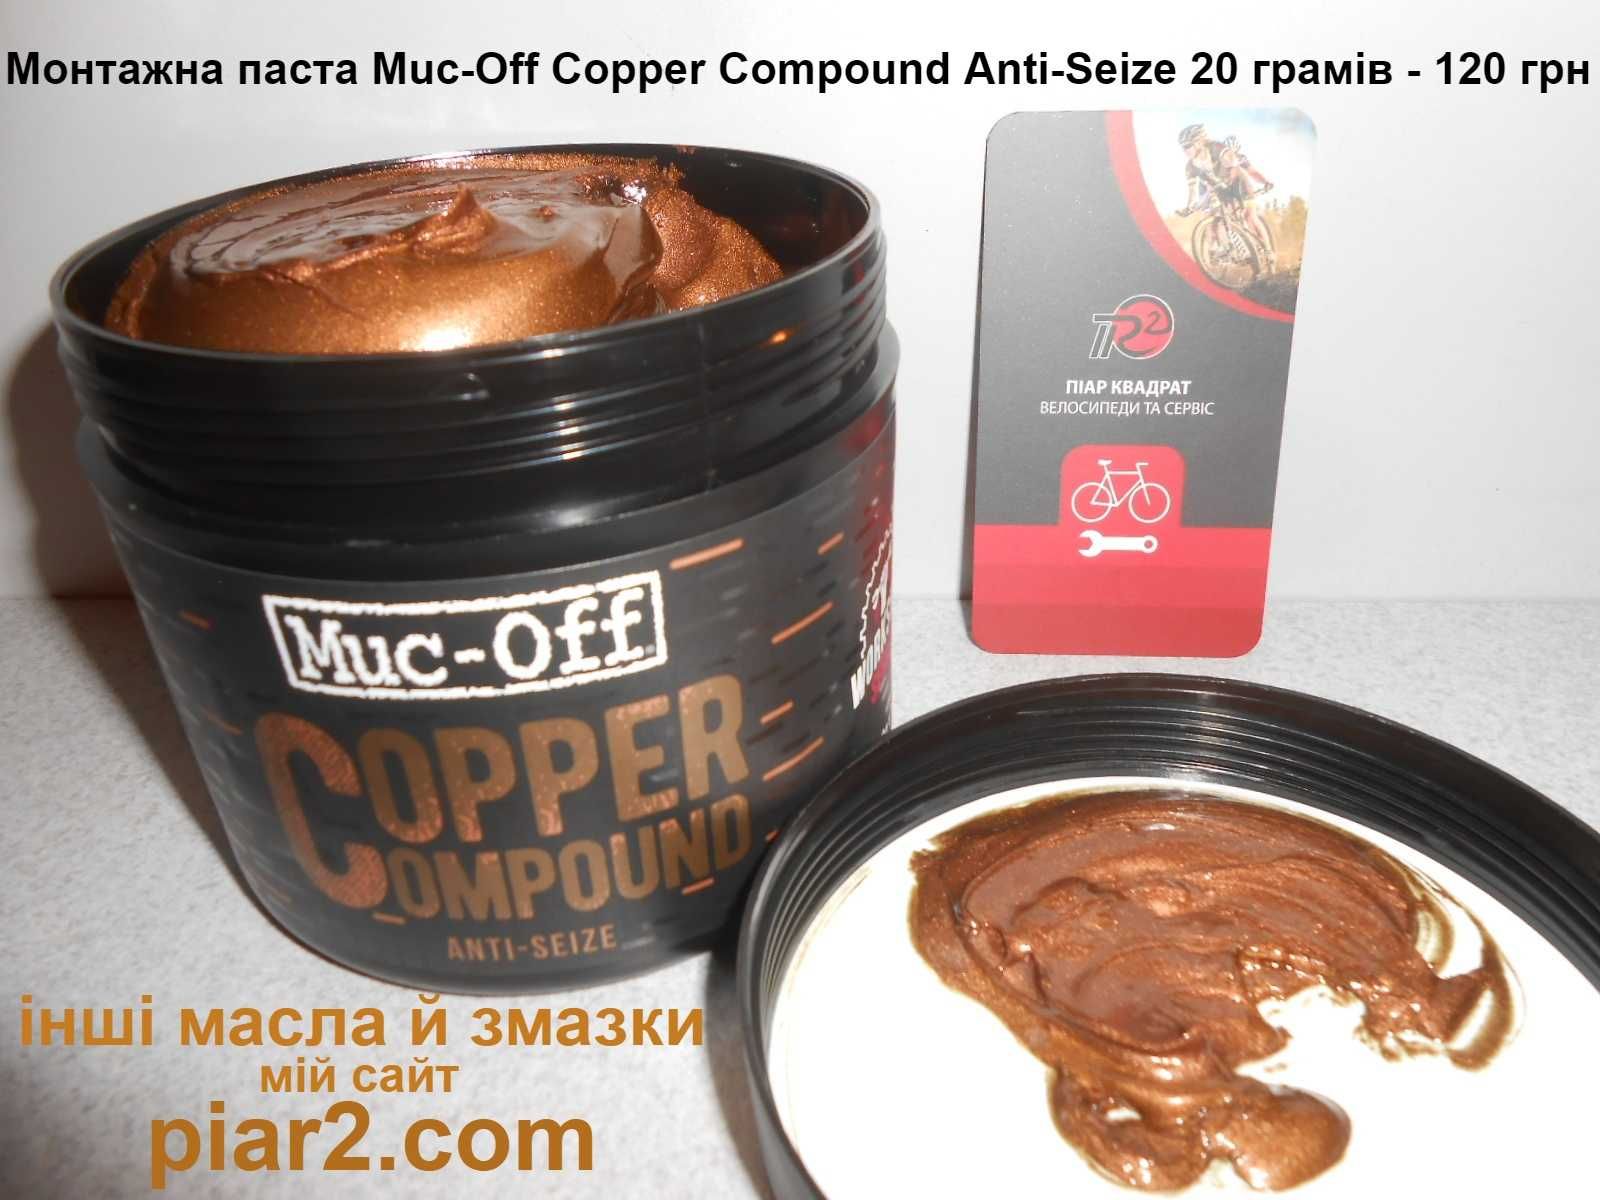 Muc-Off Kupferpaste Cooper Compound